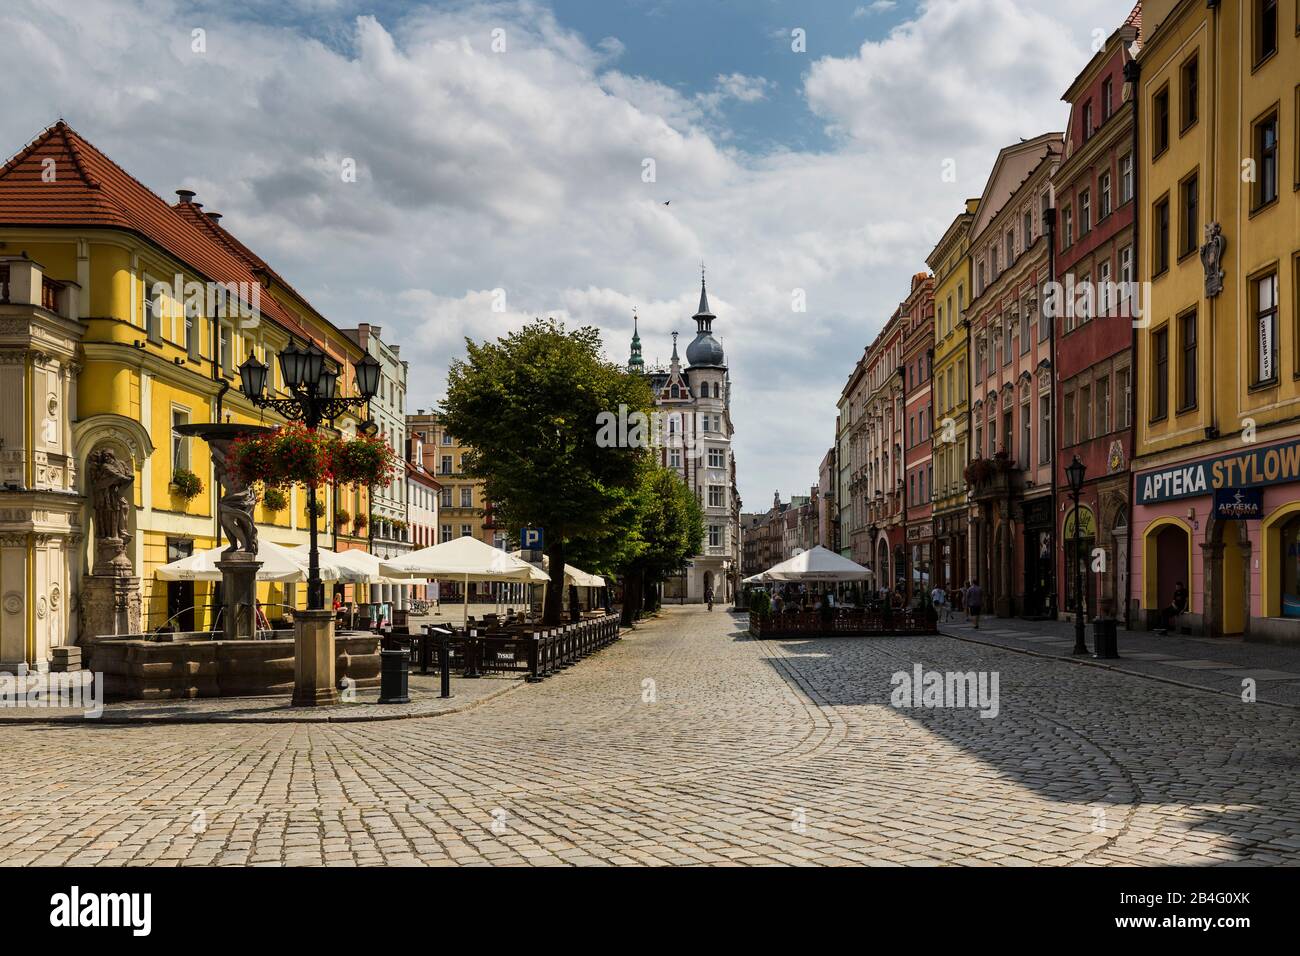 Europa, Polonia, Bassa Slesia, Swidnica / Schweidnitz, municipio e centro città Foto Stock